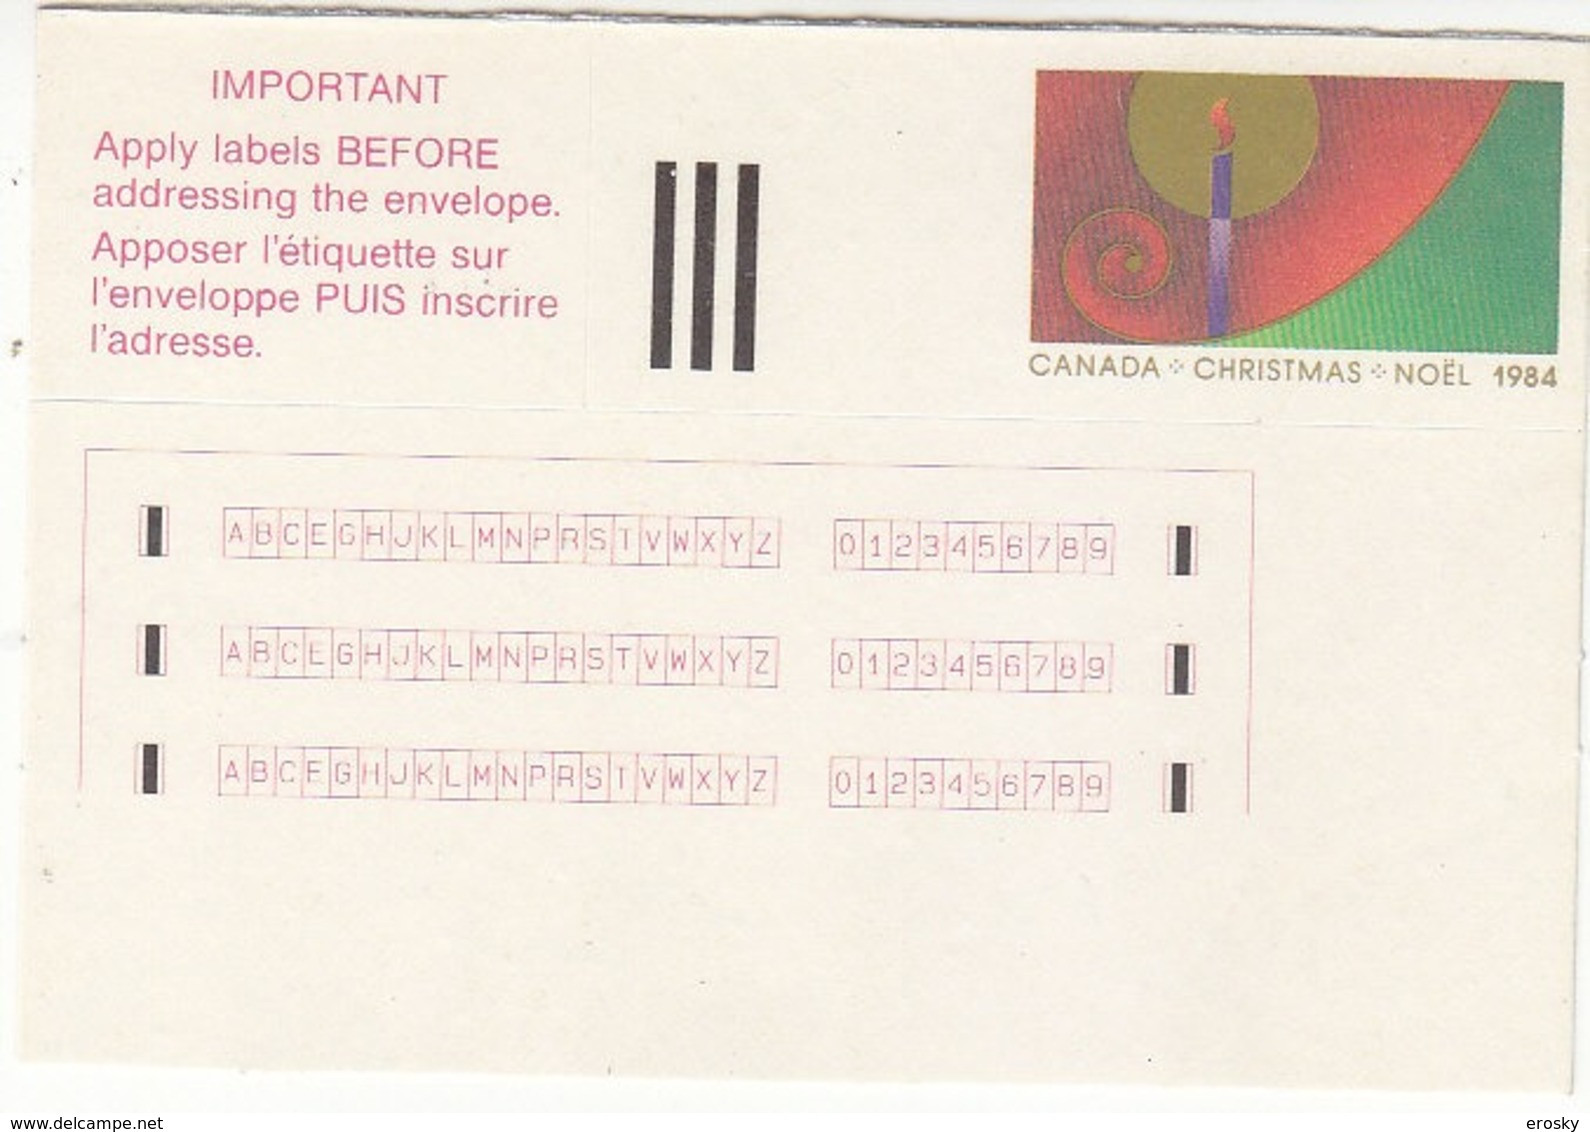 E022 - CANADA  NOEL 1984 - Vignette Di Affrancatura (ATM) – Stic'n'Tic